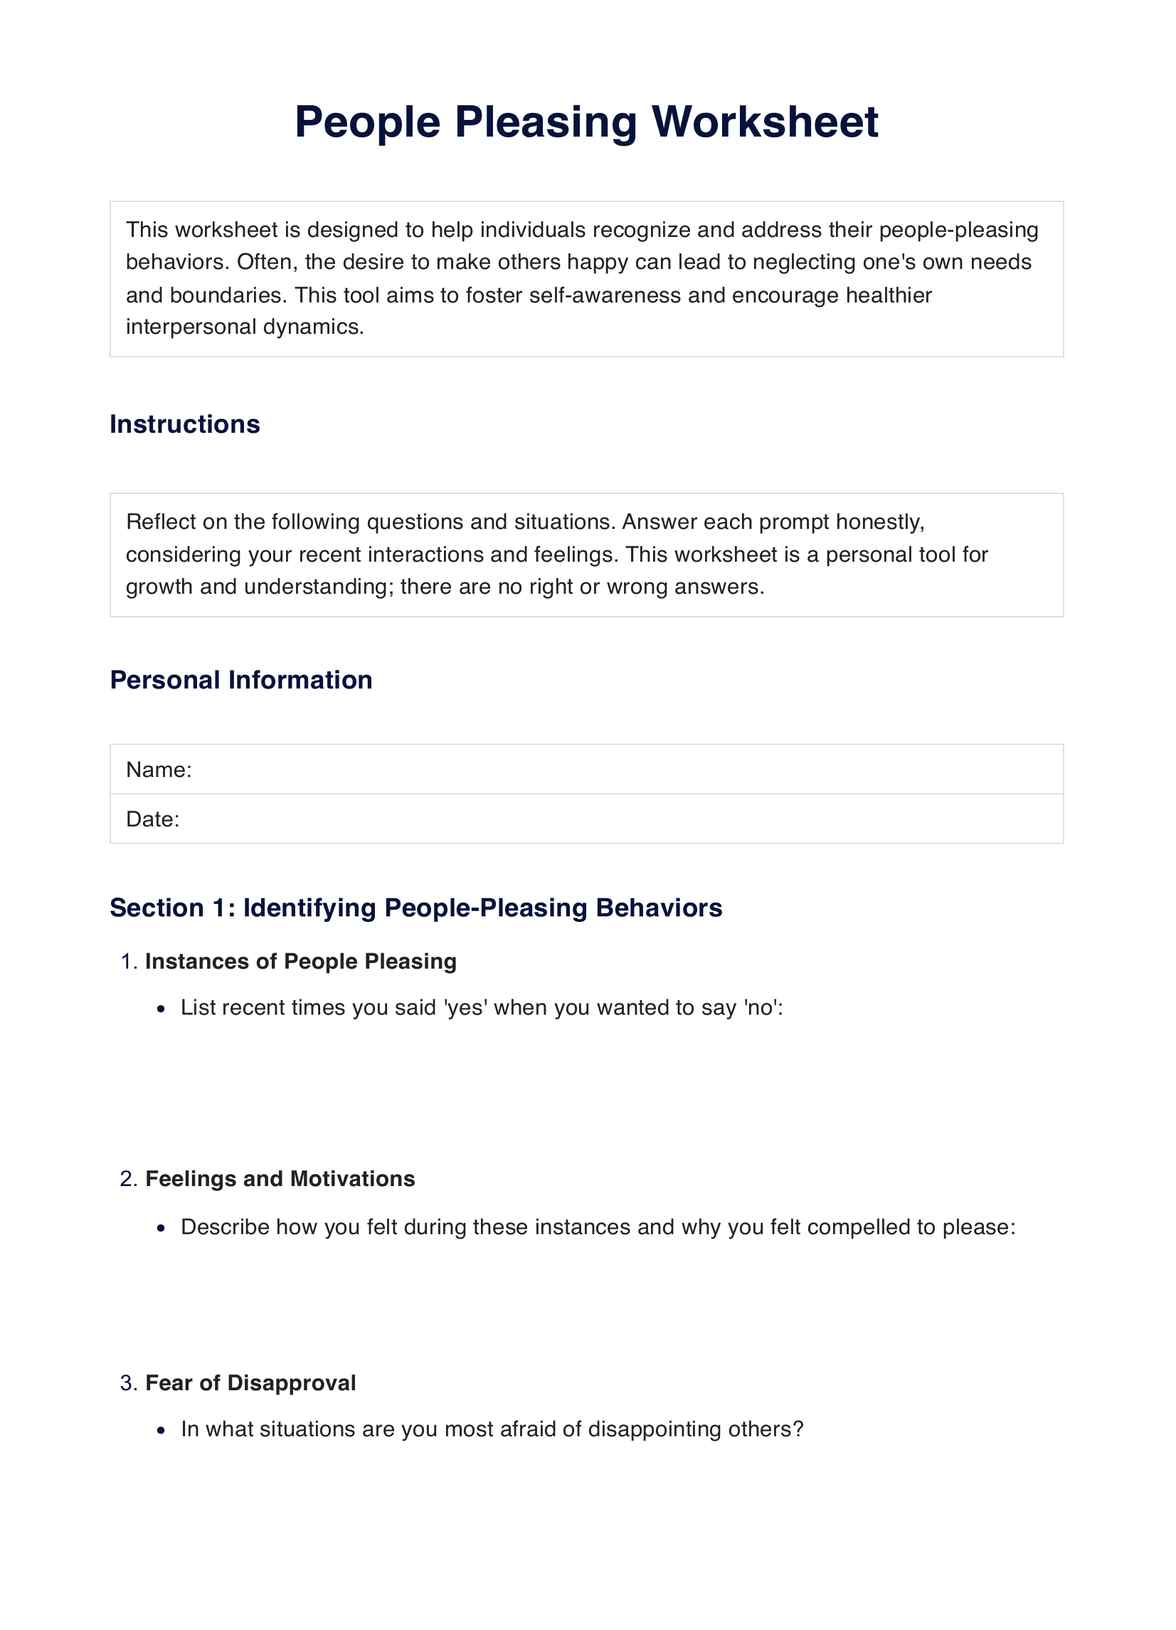 People Pleasing Worksheet PDF Example